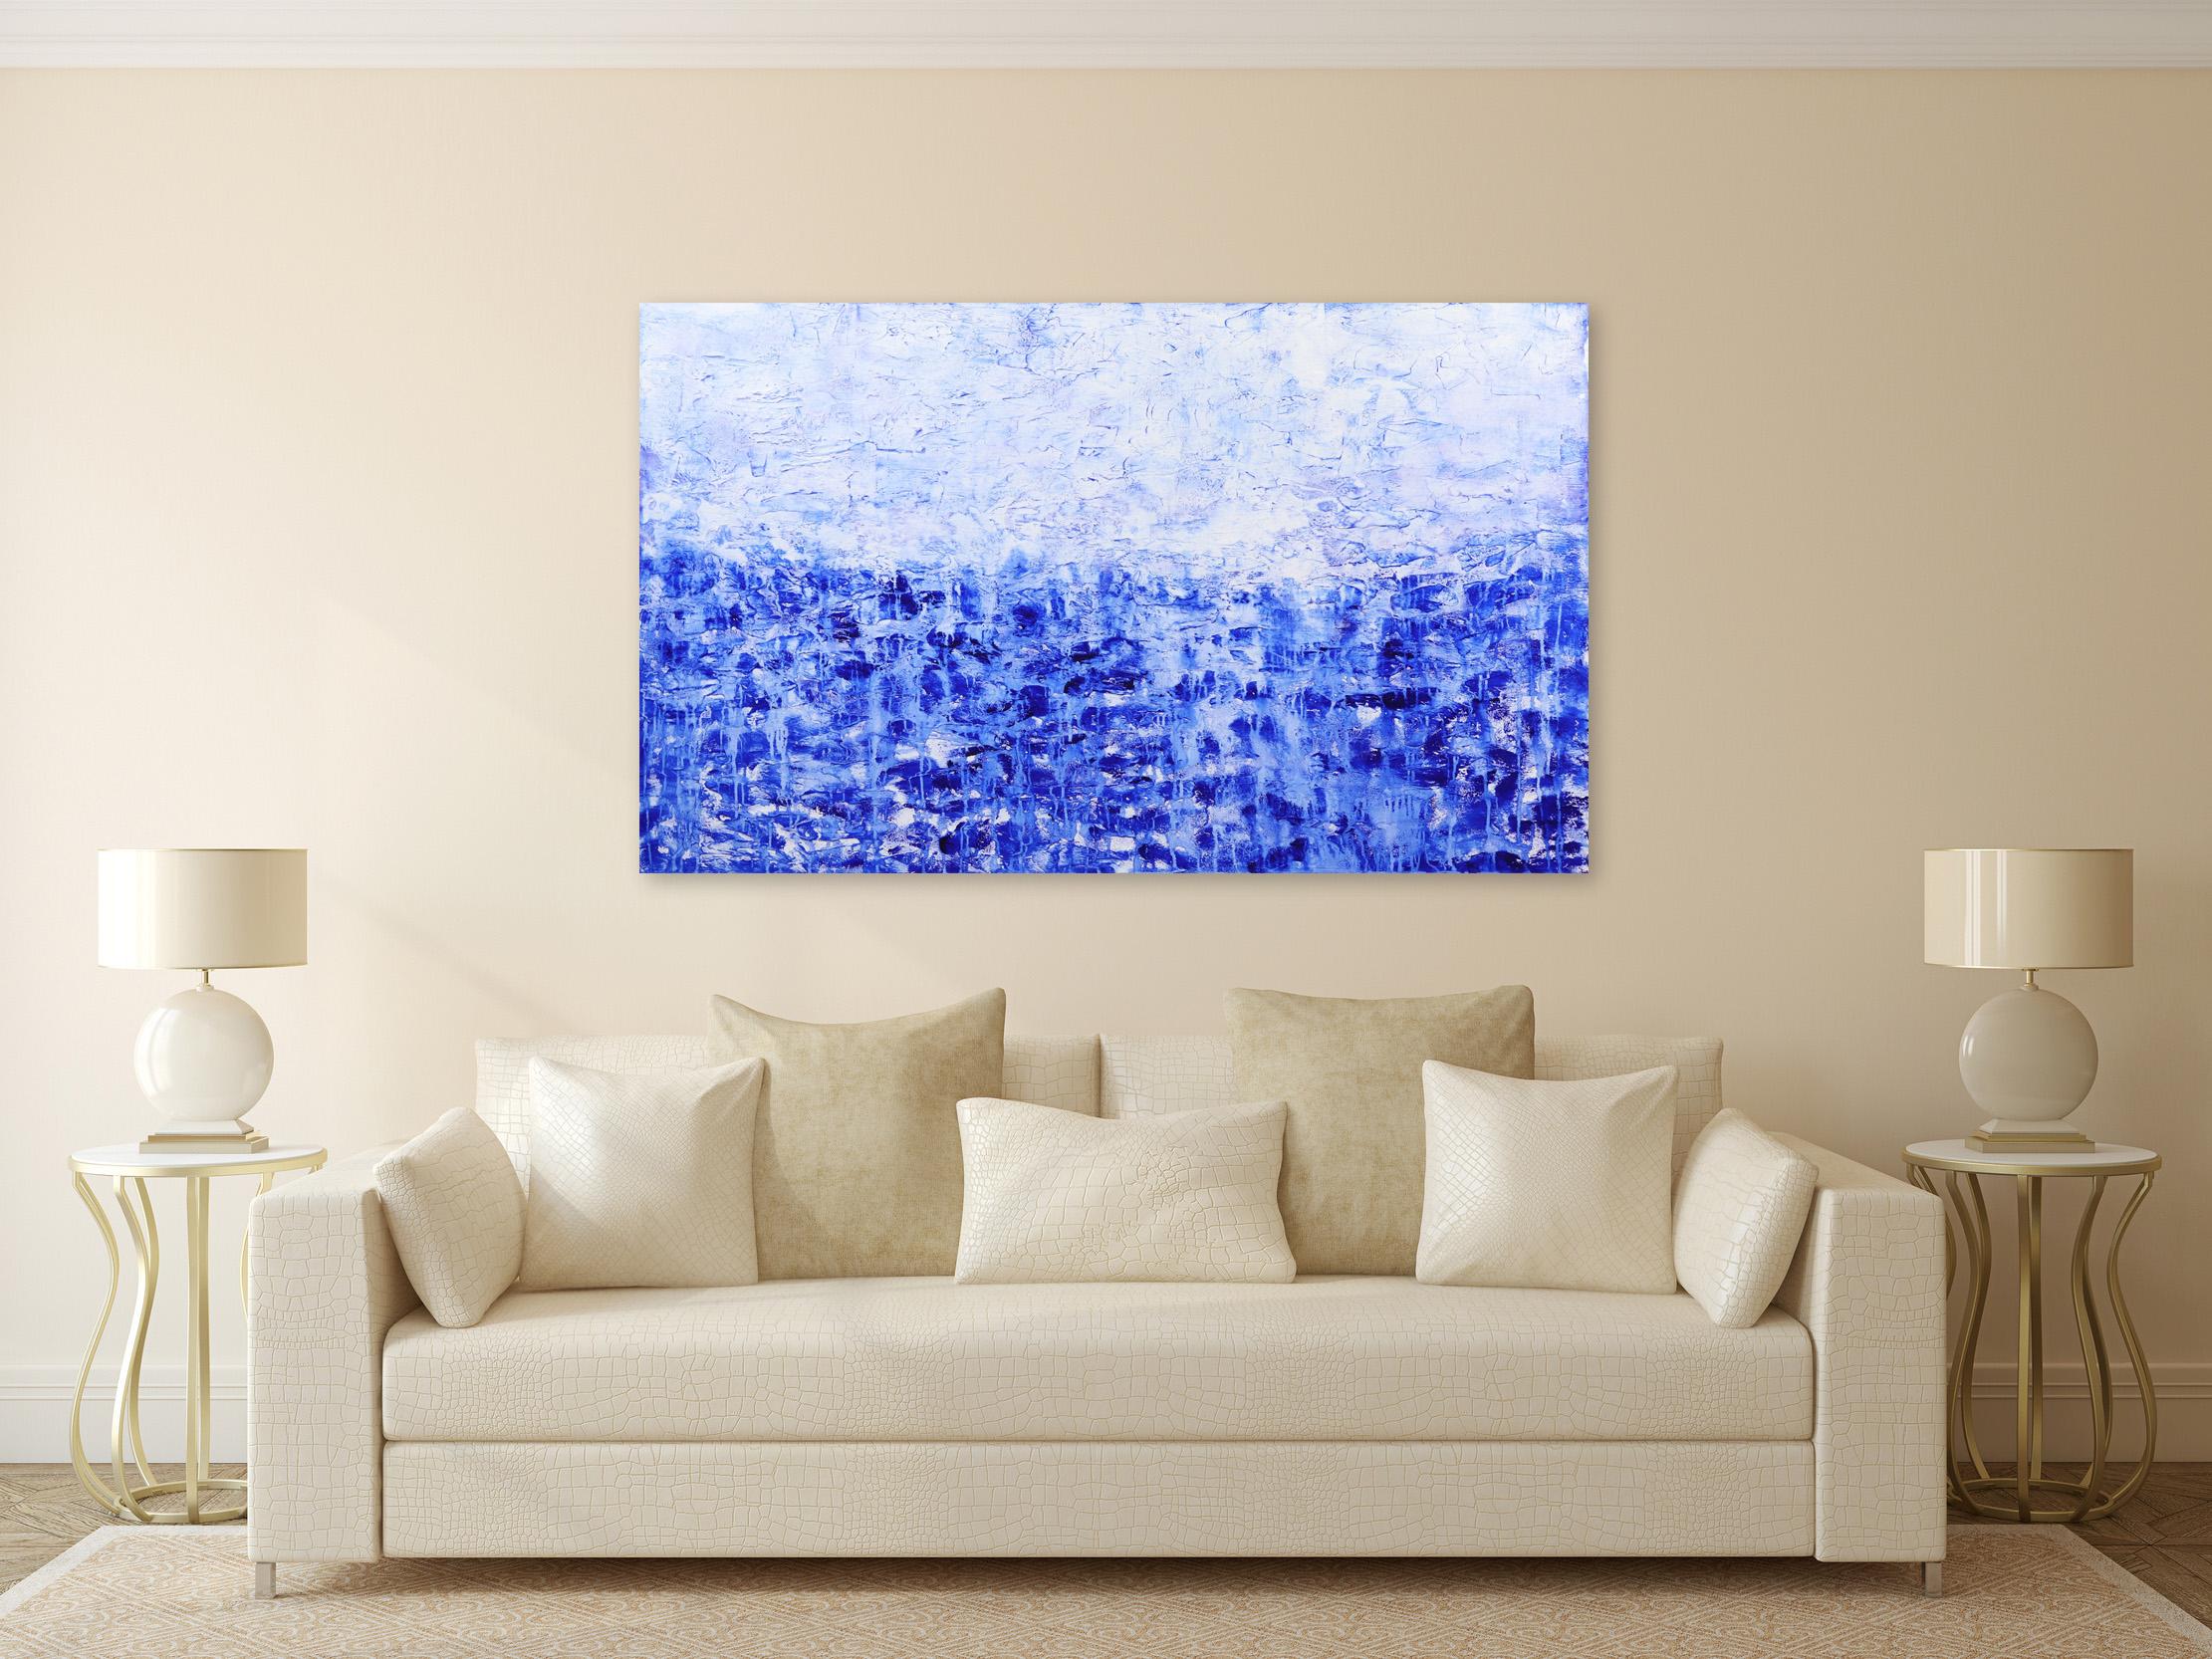 Grande peinture abstraite d'un paysage océanique, bleu et blanc texturé - Abstrait Mixed Media Art par Clara Berta